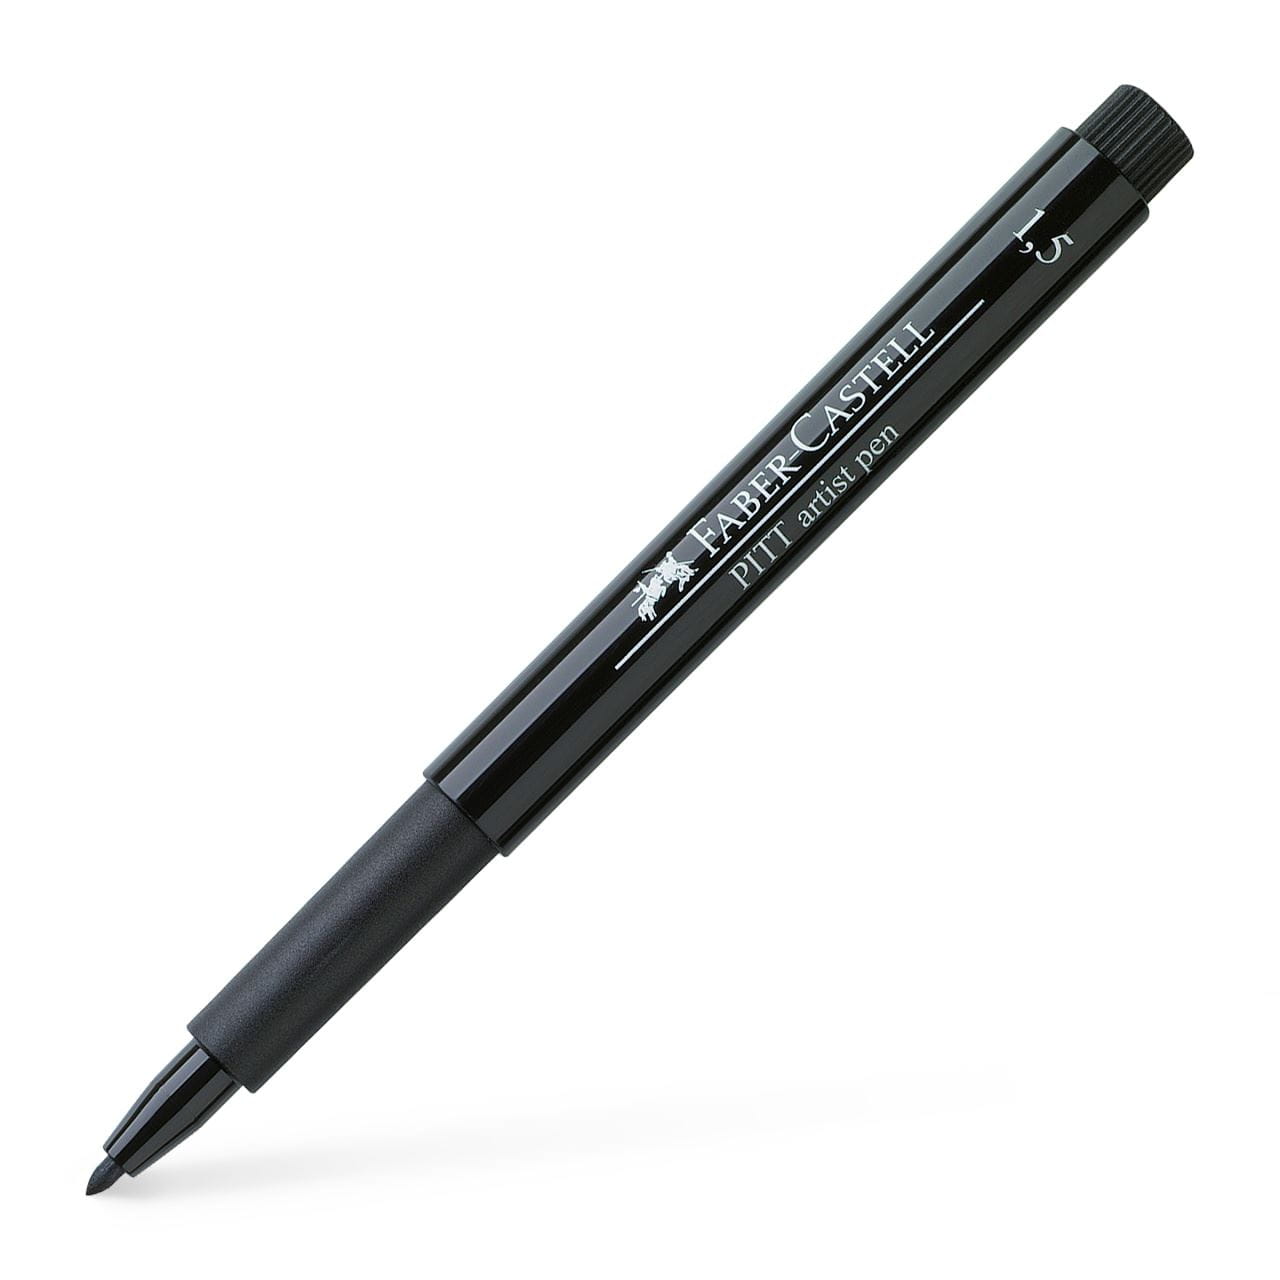 Faber-Castell - Pitt Artist Pen bullet nib 1.5 India ink pen, black